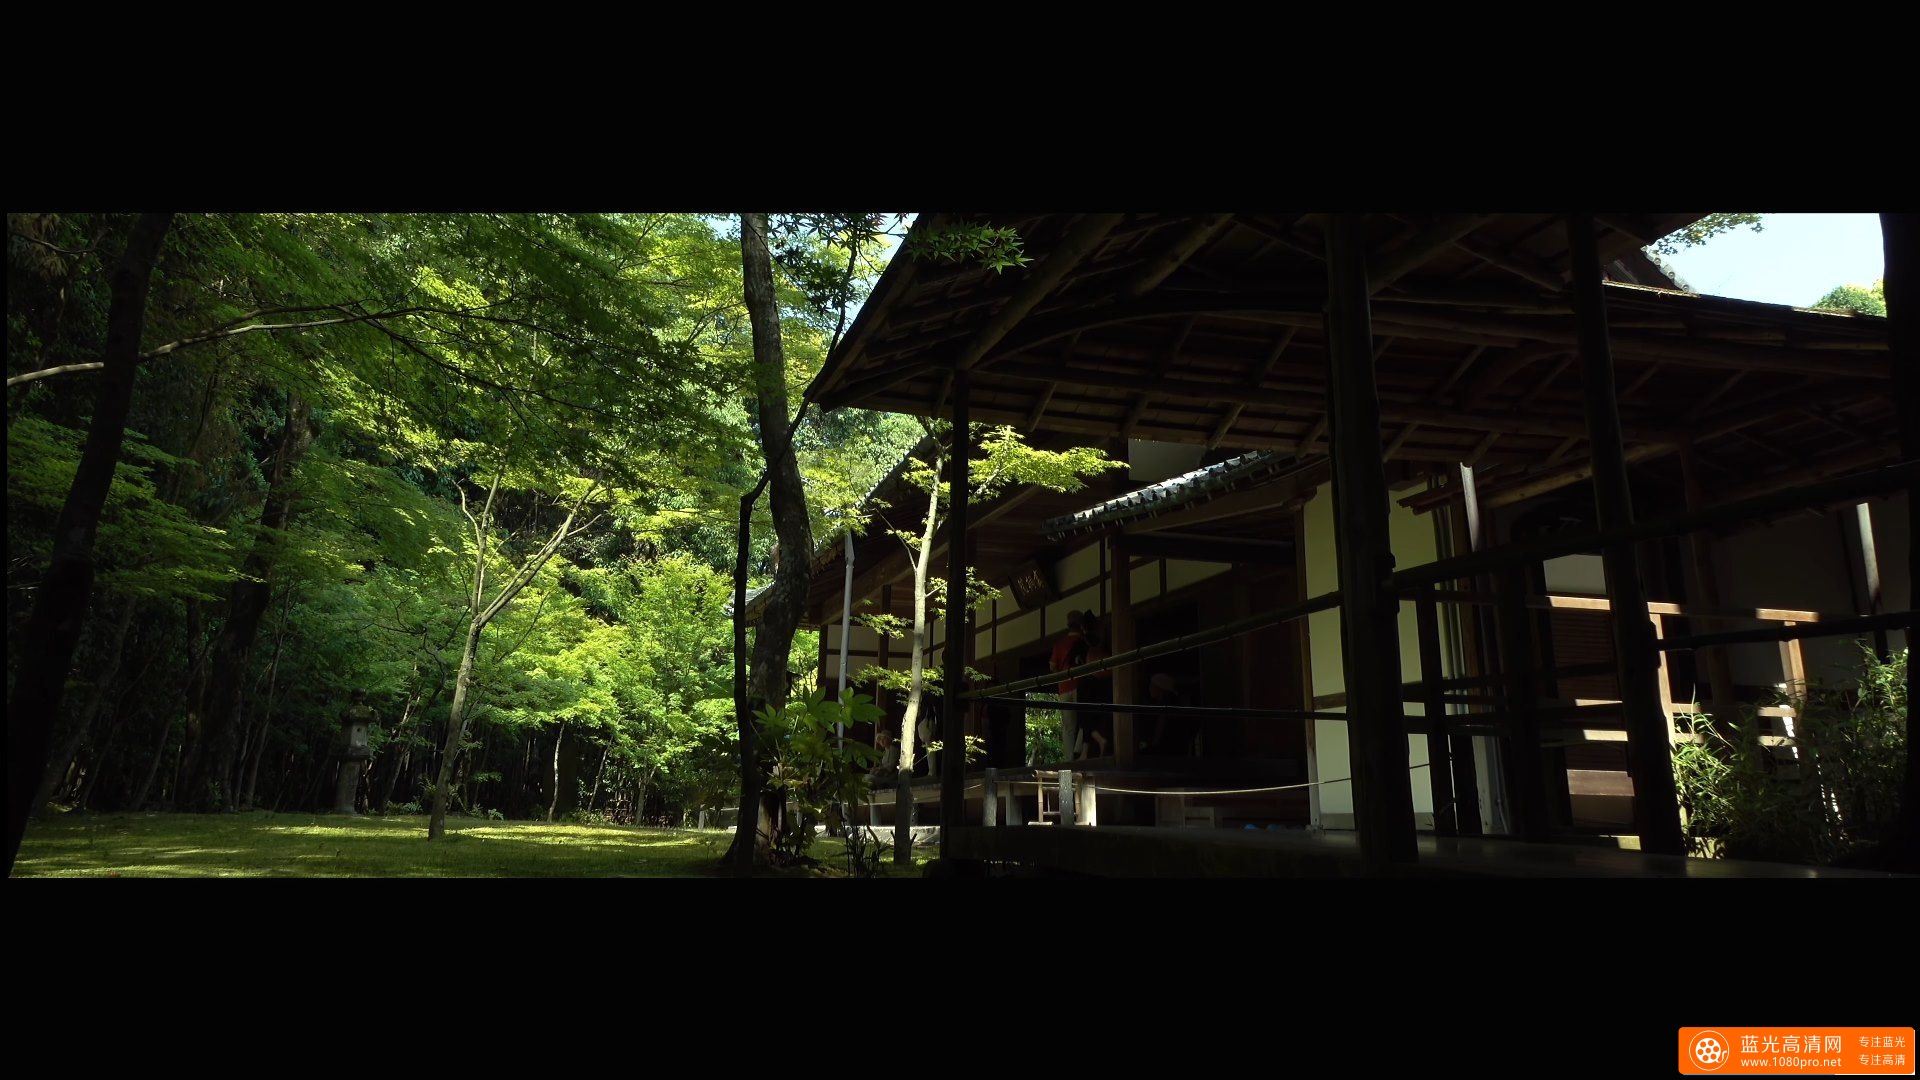 高桐院 大徳寺 京都の庭園 Koto-in Temple Daitoku-ji The Gardens of Kyoto Japan-1.jpg